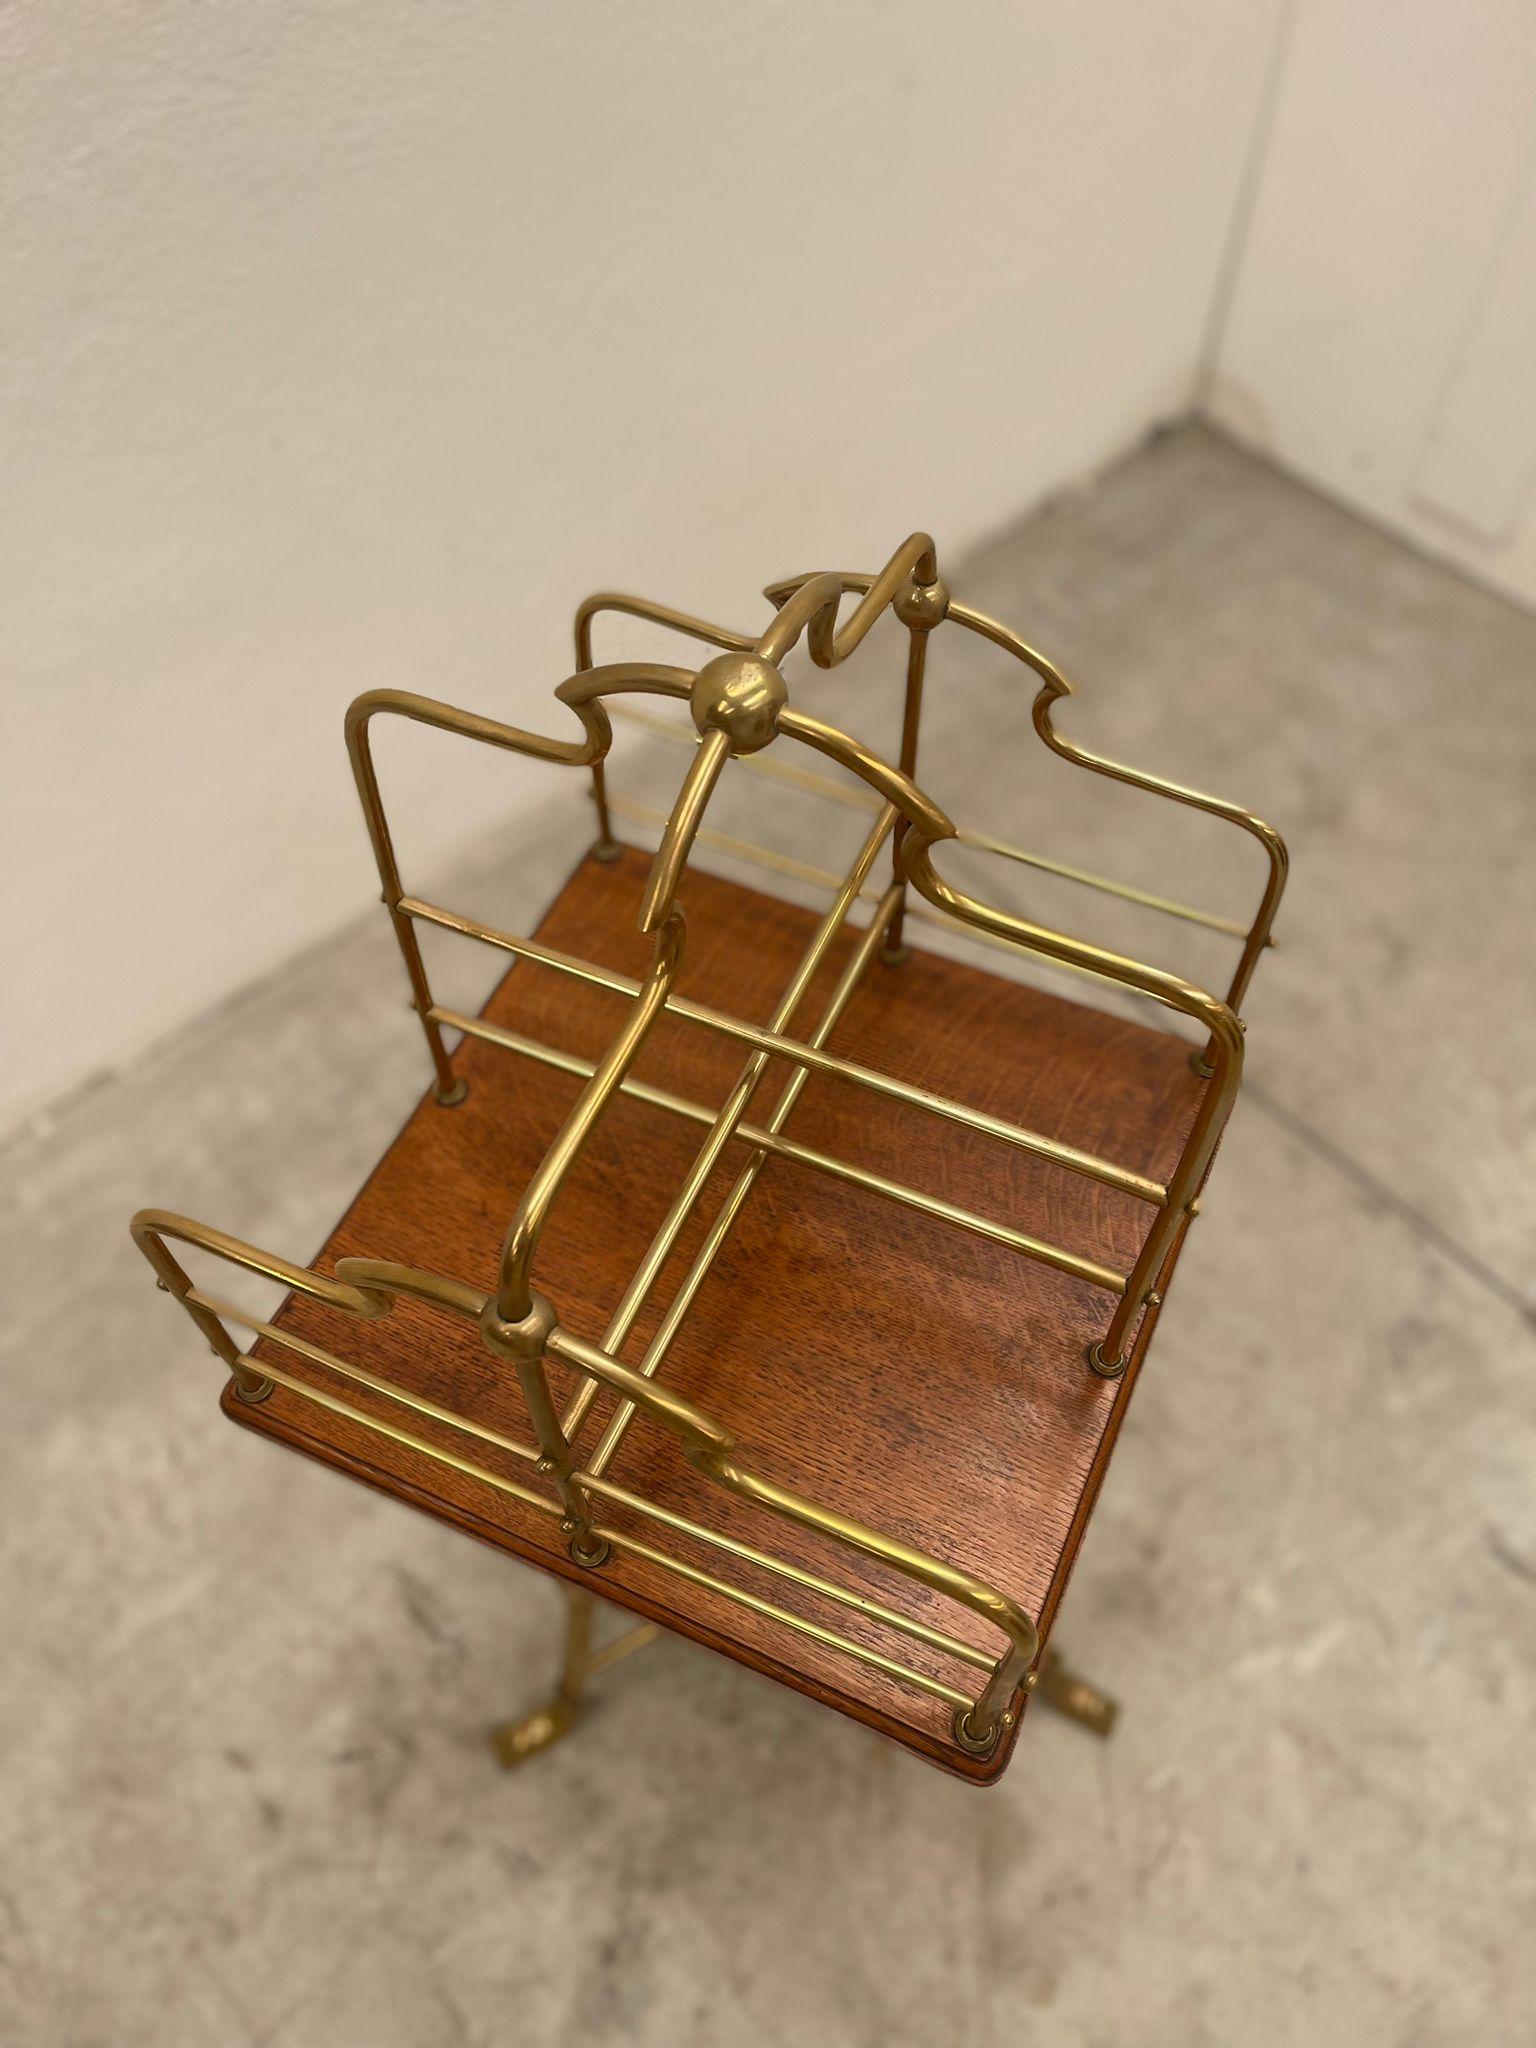 Low brass trolley, Porta DC

Private Collection di domenico Rugiano 